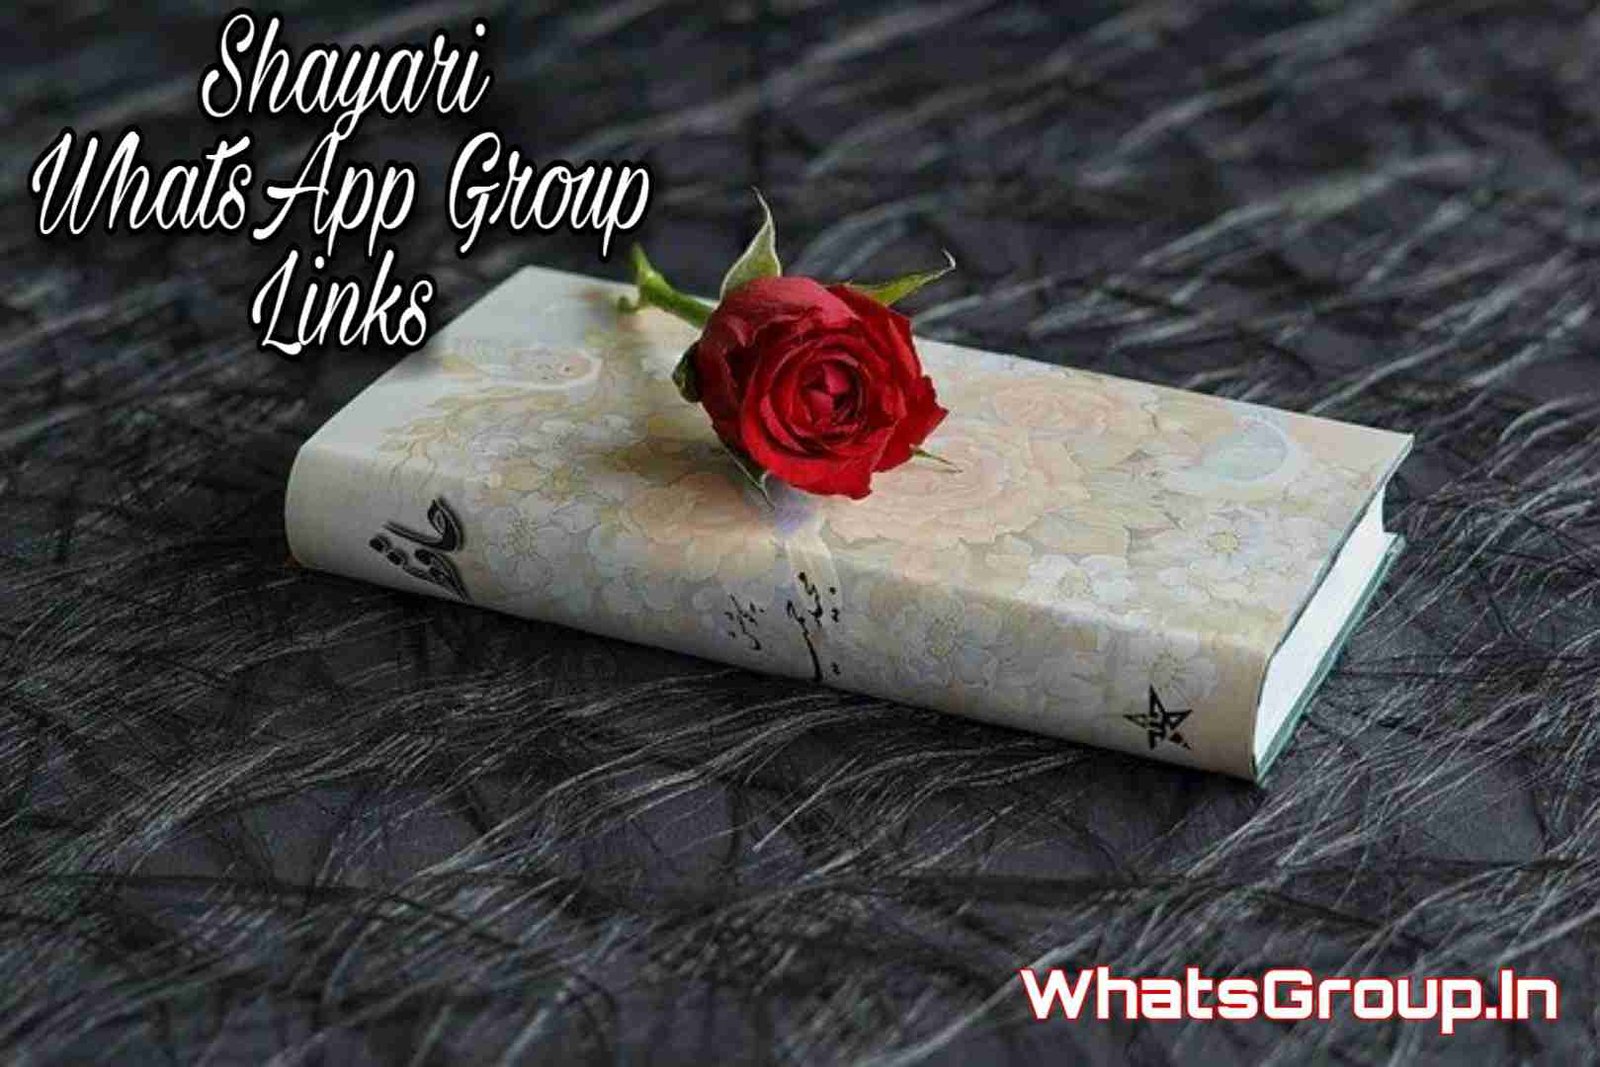 http://whatsgroup.in/mumbai-whatsapp-group-links/